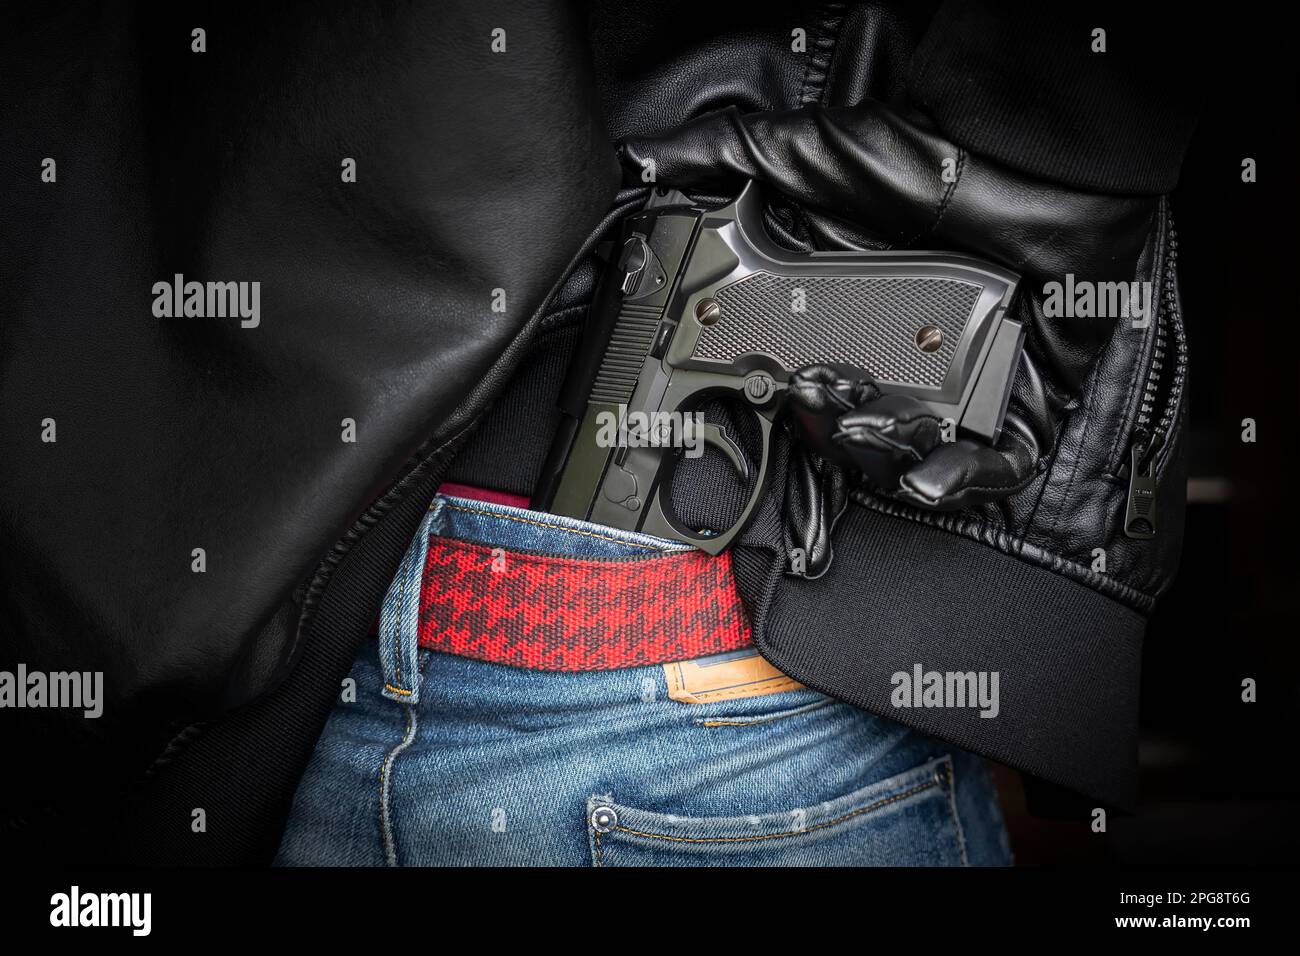 Ein Mann, Polizist oder Räuber, ein Gangster, der seine Waffe hinter seinem Rücken versteckt. Der Schütze zieht eine Waffe unter einer schwarzen Lederjacke heraus. Stockfoto